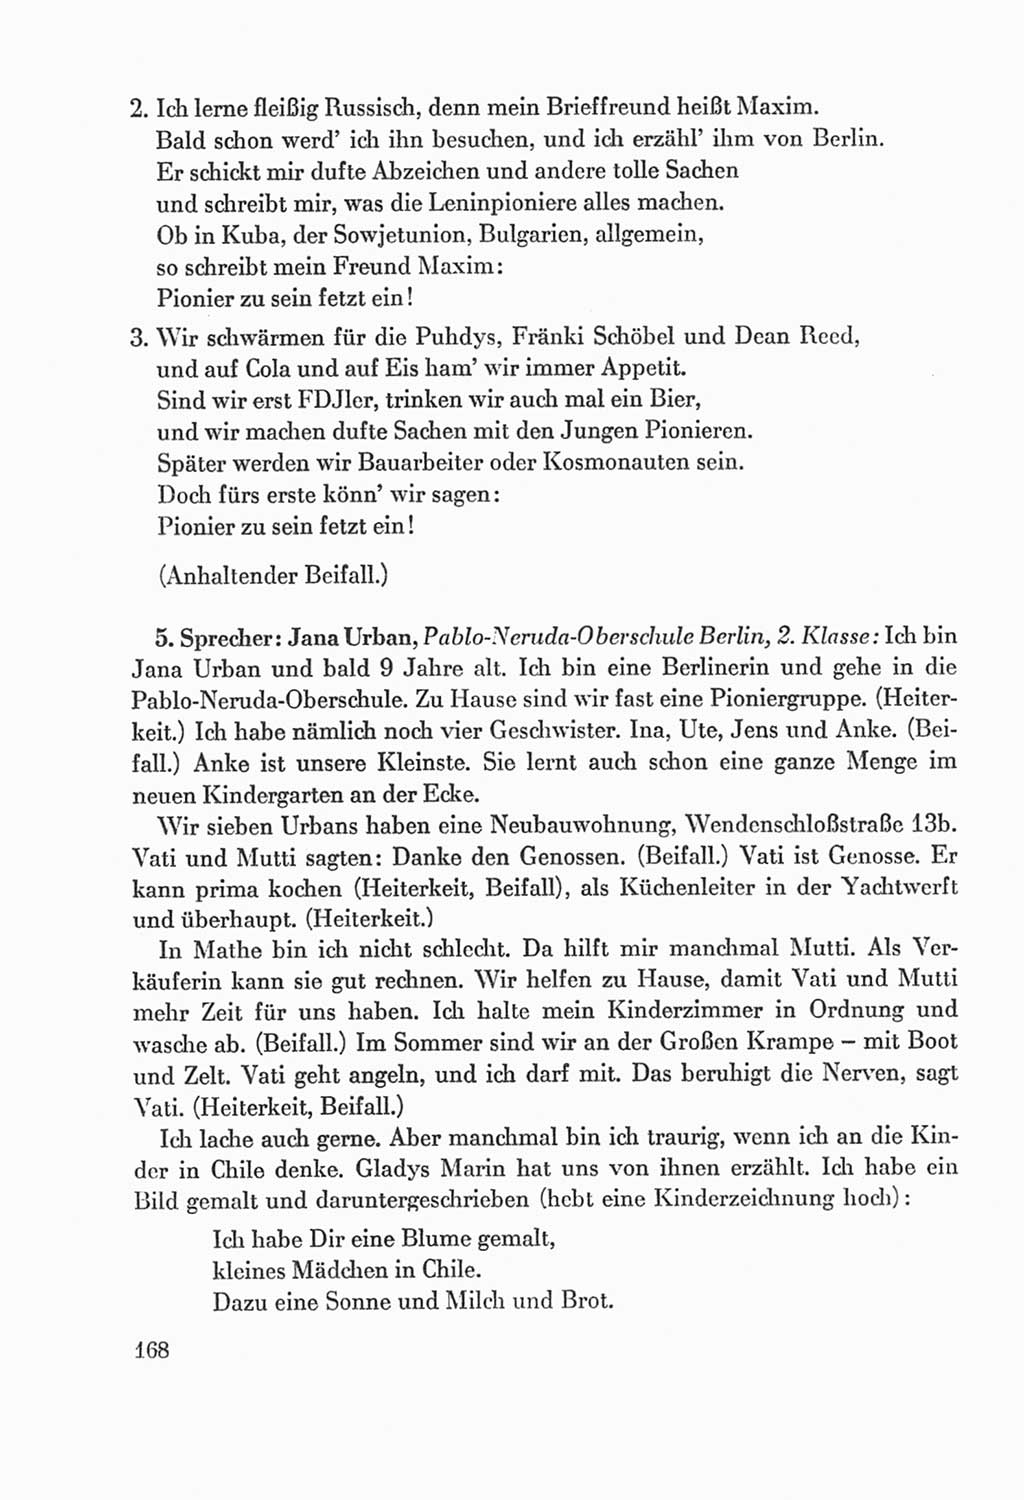 Protokoll der Verhandlungen des Ⅸ. Parteitages der Sozialistischen Einheitspartei Deutschlands (SED) [Deutsche Demokratische Republik (DDR)] 1976, Band 2, Seite 168 (Prot. Verh. Ⅸ. PT SED DDR 1976, Bd. 2, S. 168)